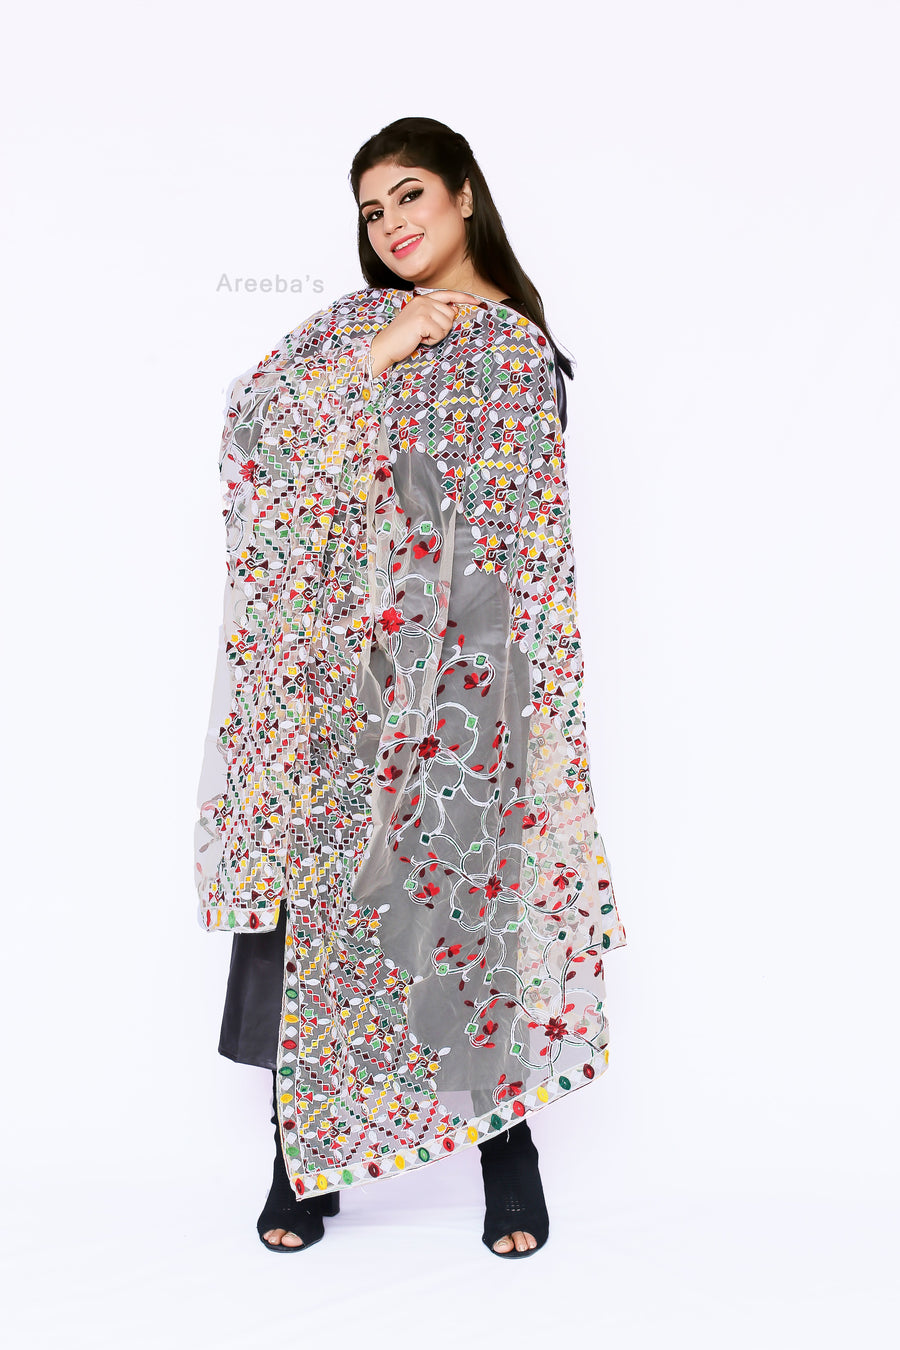 Dupatta 138- Areeba's Couture